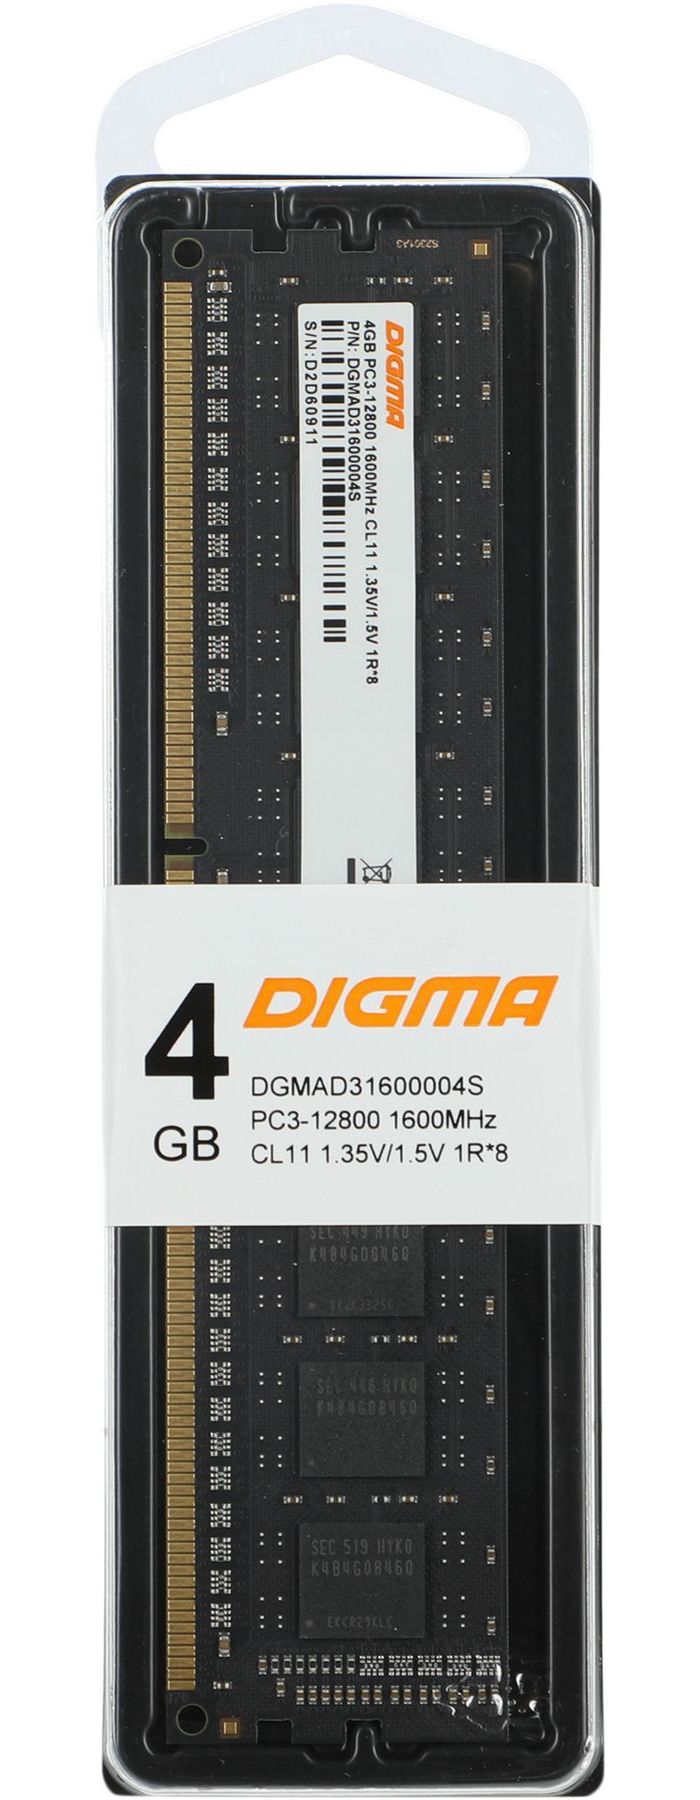 Оперативная память DDR3L Digma 4Gb 1600MHz DIMM (DGMAD31600004S) оперативная память digma ddr3 dimm pc3 10600 1333mhz 4gb dgmad31333004d